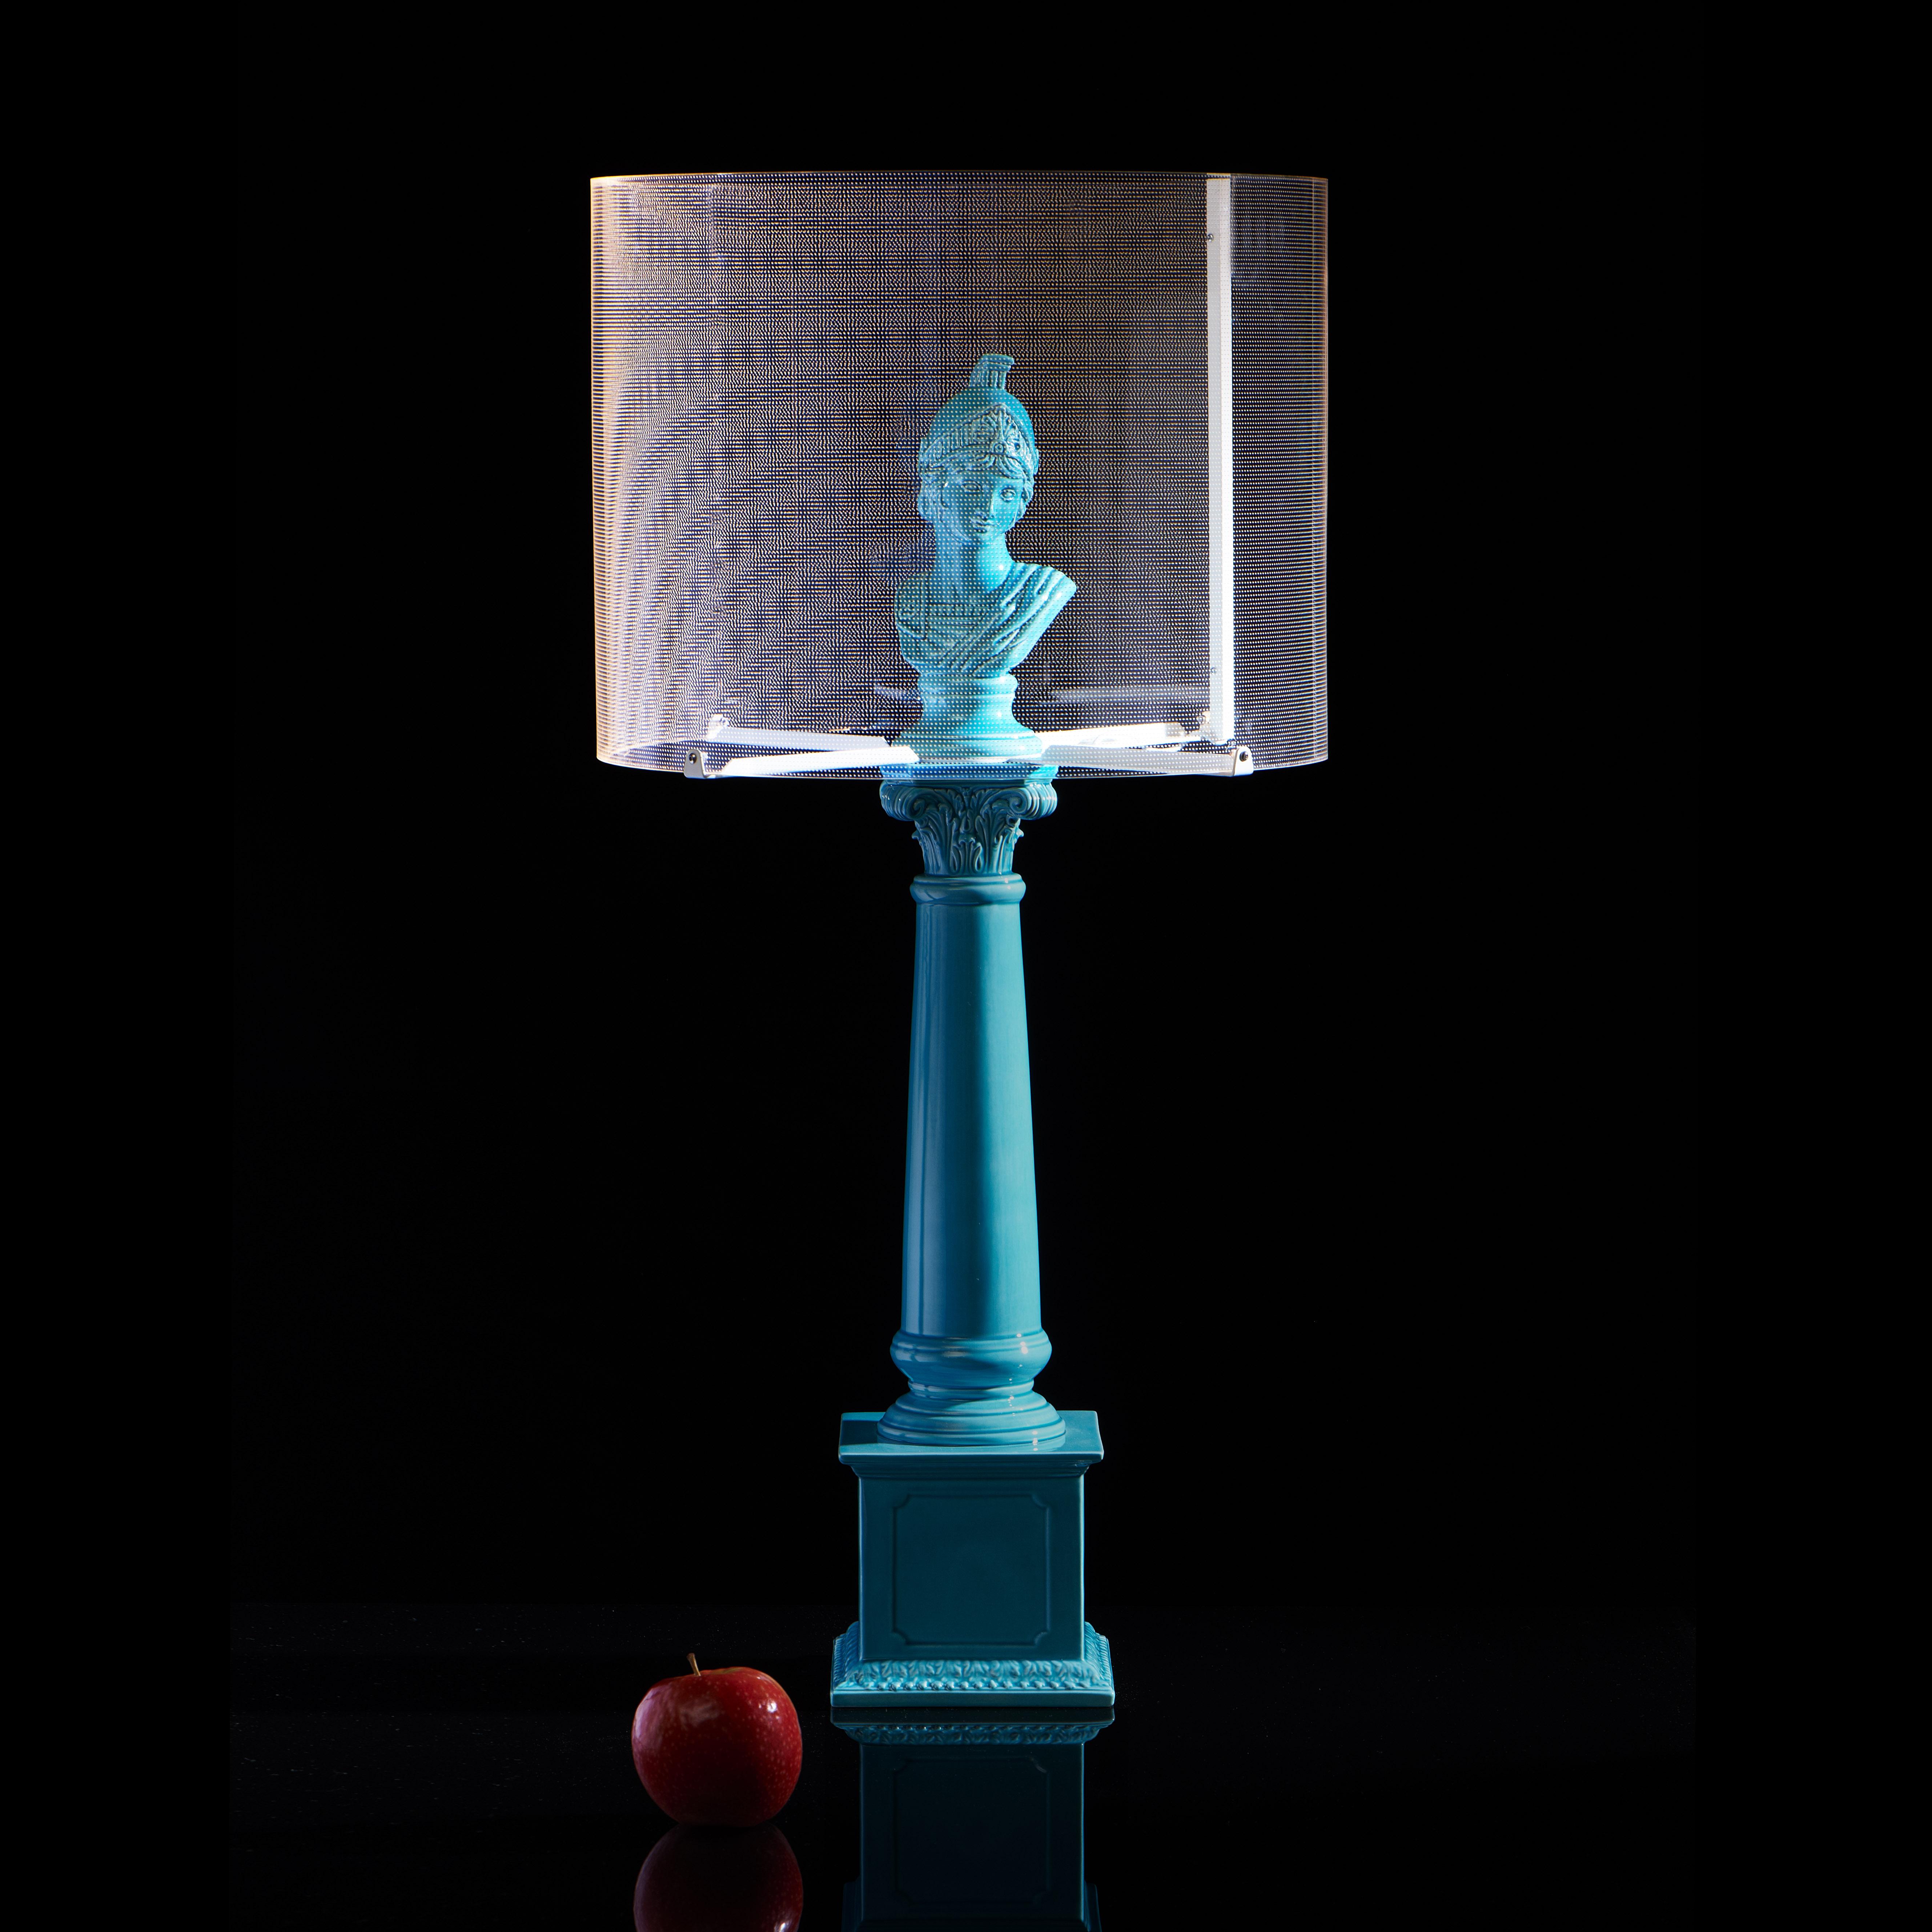 Cette élégante lampe de table réunit l'innovation et le mythe classique pour une expérience d'éclairage unique. Le corps de la lampe est fabriqué en céramique de haute qualité dans la tradition vénitienne, entièrement finie à la main. Sa